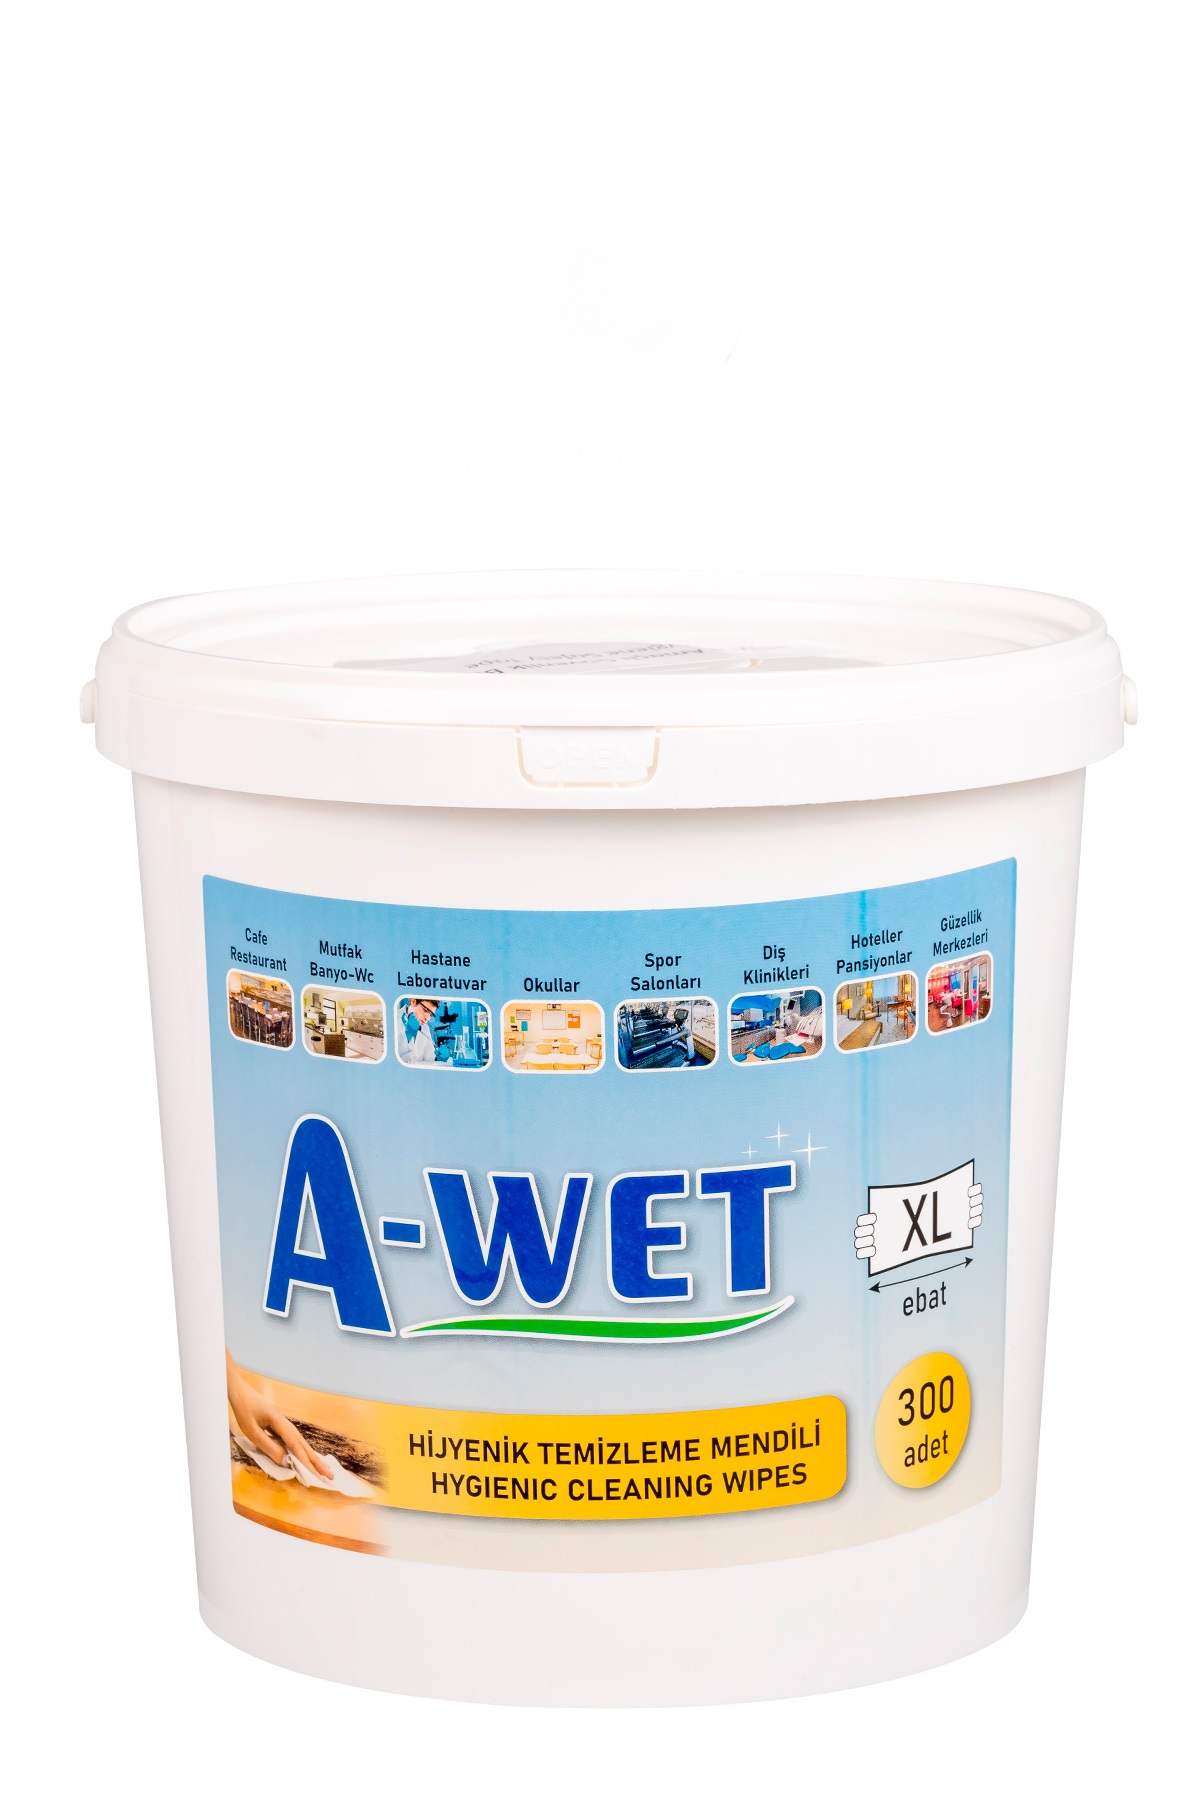 A-Wet Hjyenik Temizlik Mendili Kova XL 300 Adet